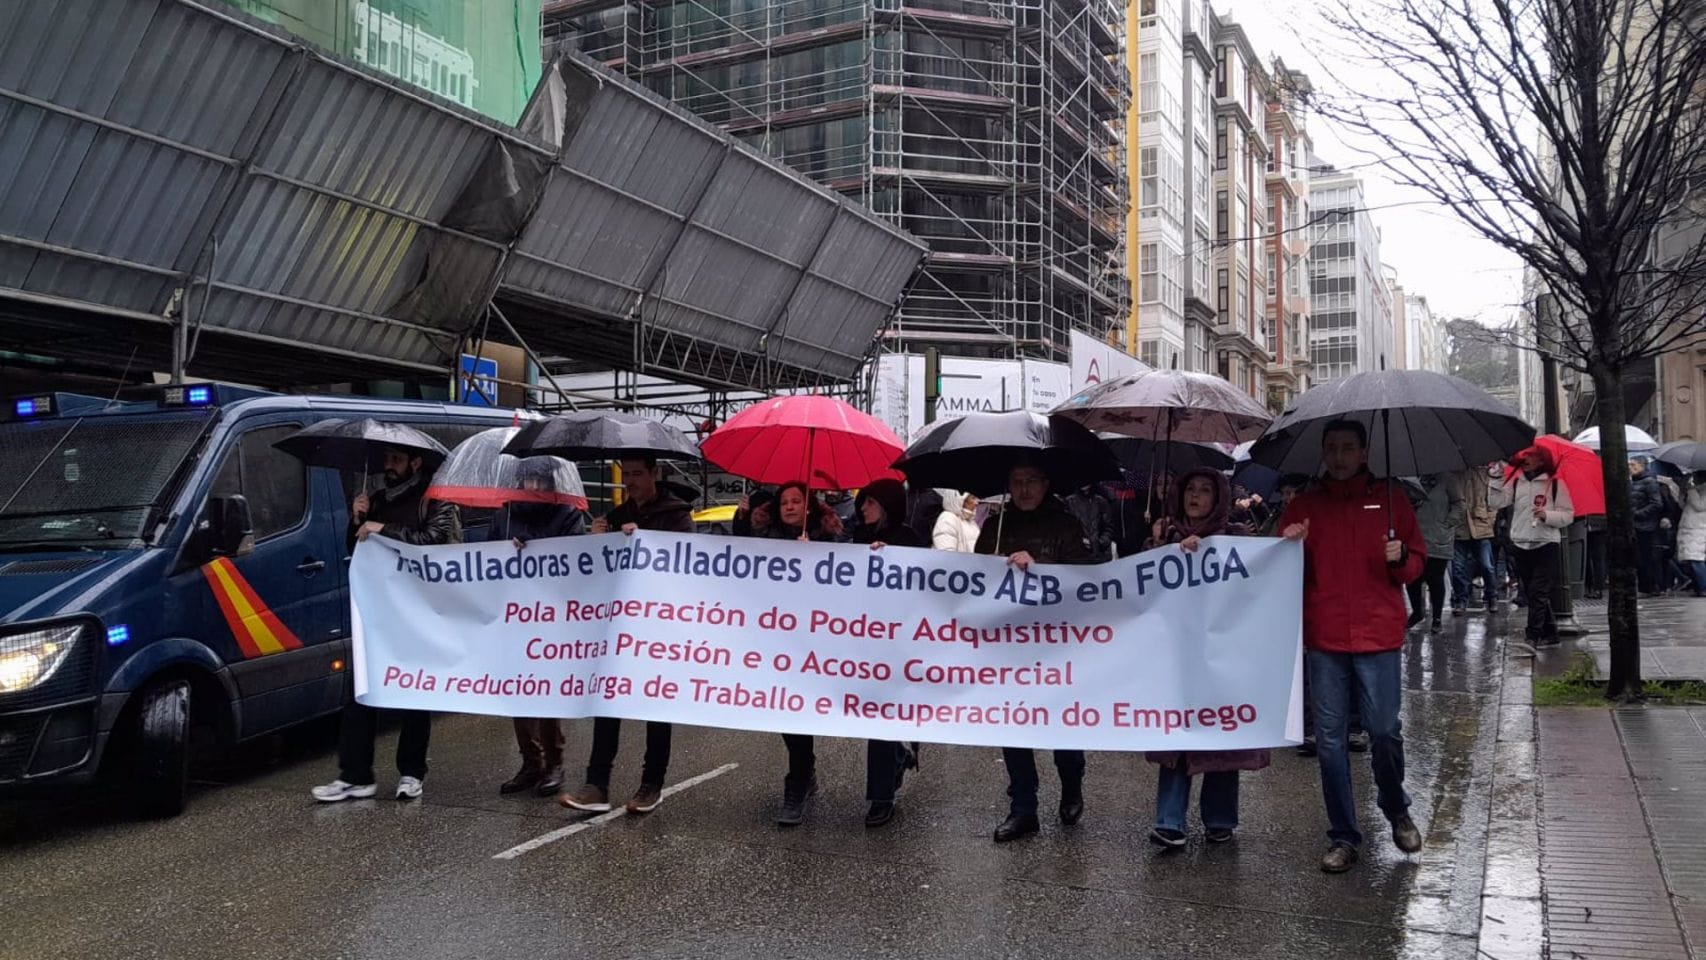 Protesta en demanda de un convenio "justo" en el sector bancario
ECONOMIA GALICIA ESPAÑA EUROPA A CORUÑA